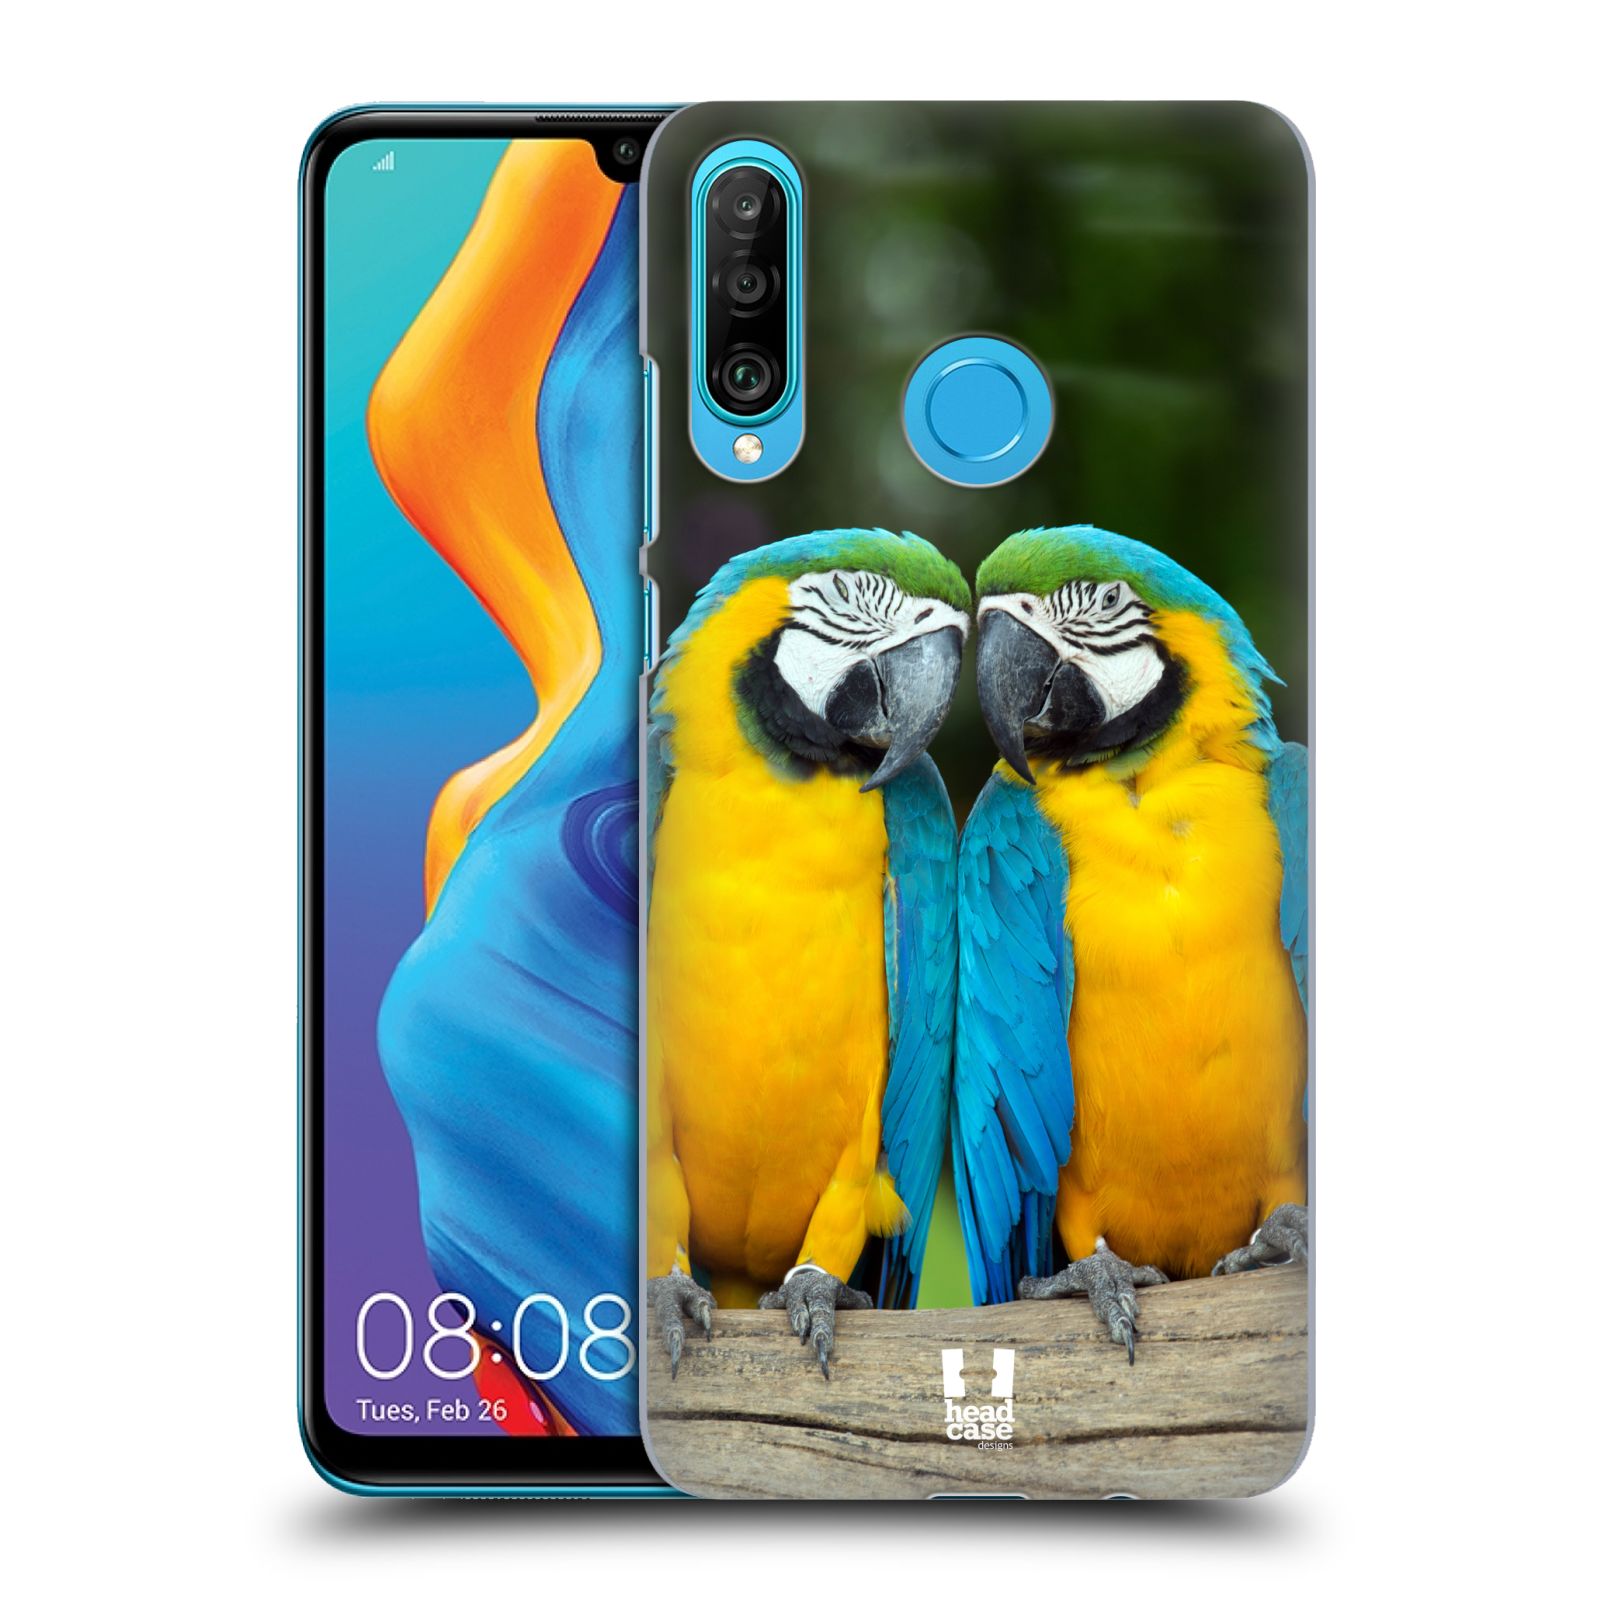 Pouzdro na mobil Huawei P30 LITE - HEAD CASE - vzor slavná zvířata foto dva papoušci